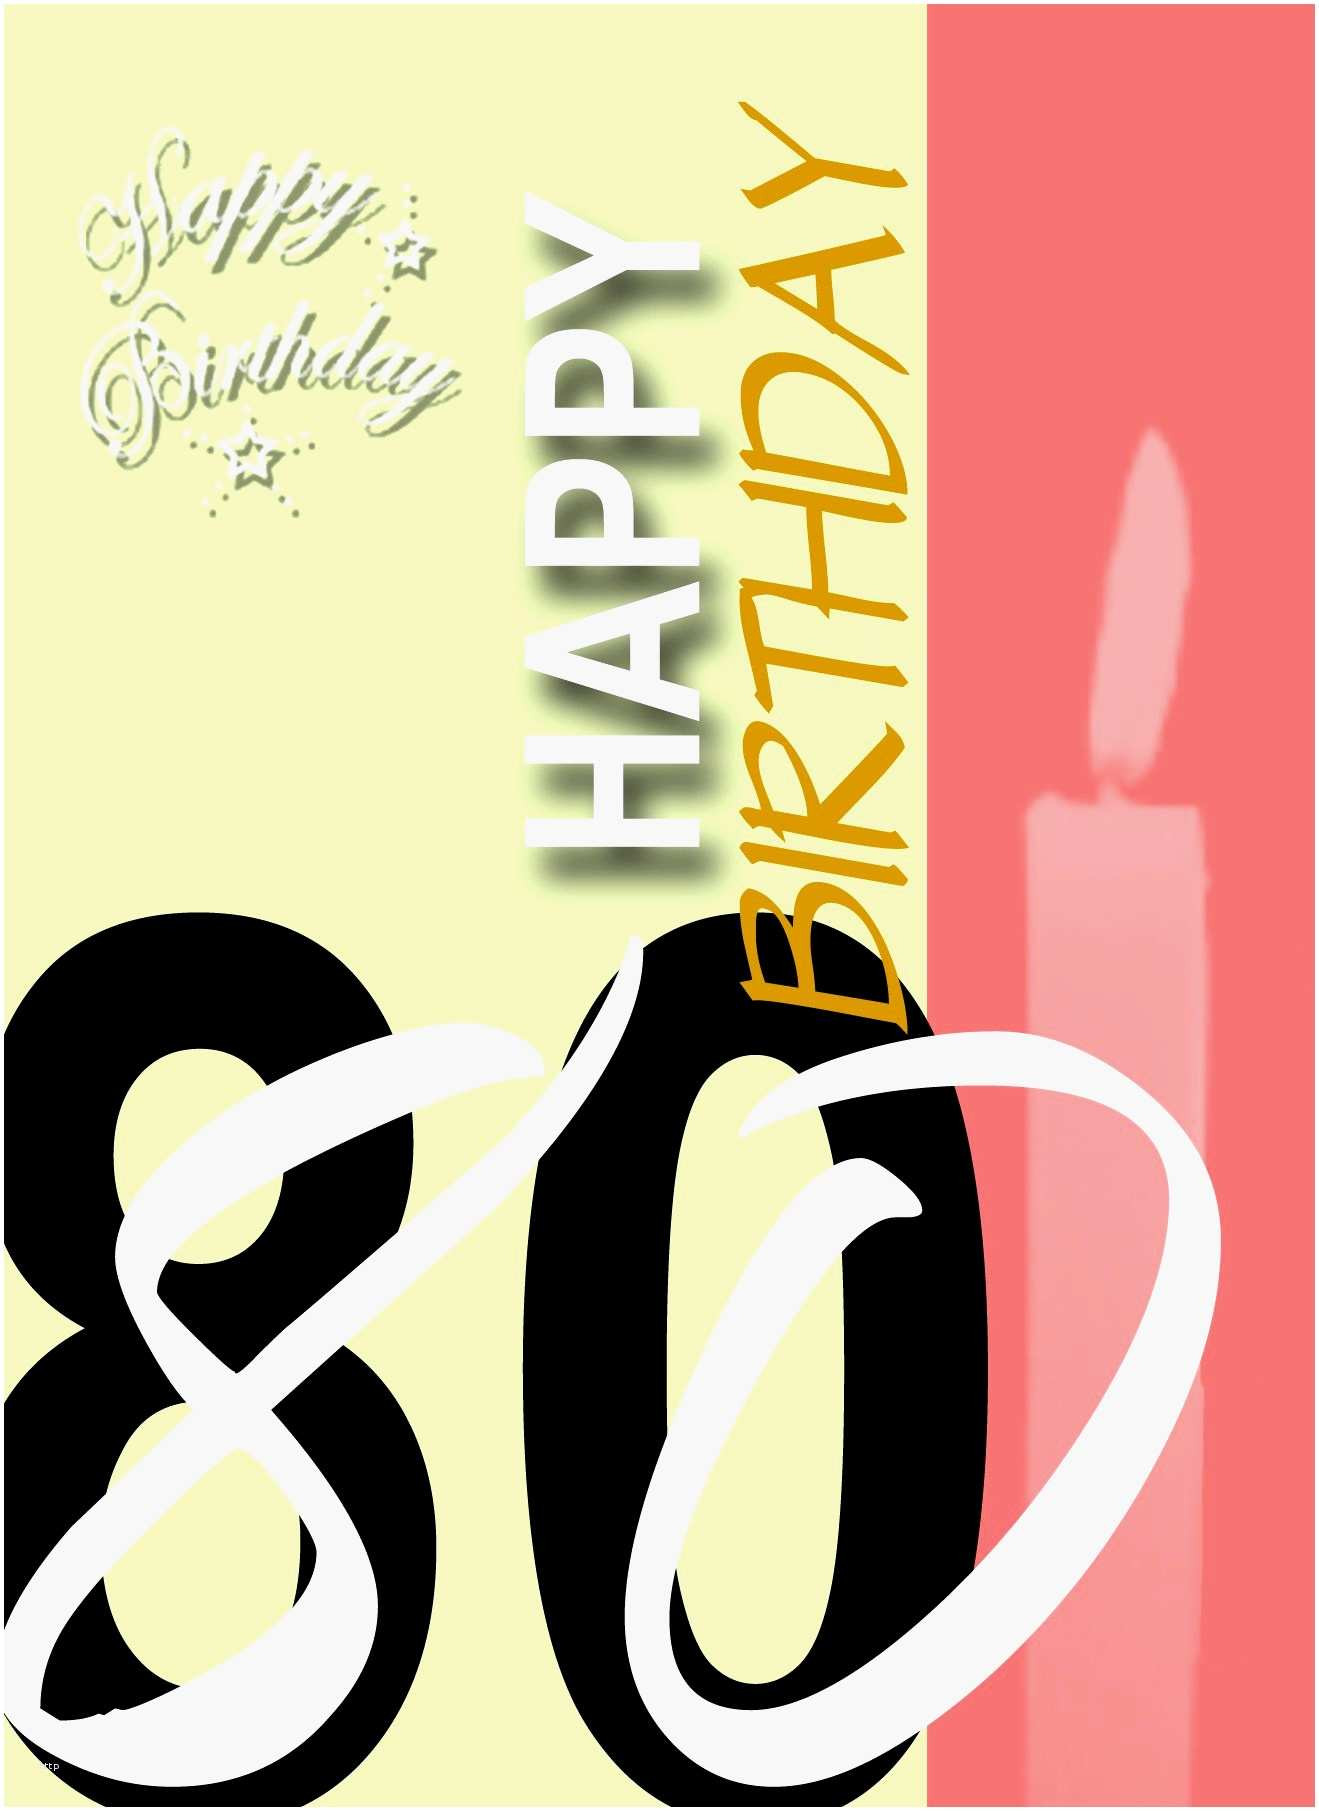 Geburtstagswünsche 80. Geburtstag
 Geburtstagswünsche Zum 80 Geburtstag Luxus